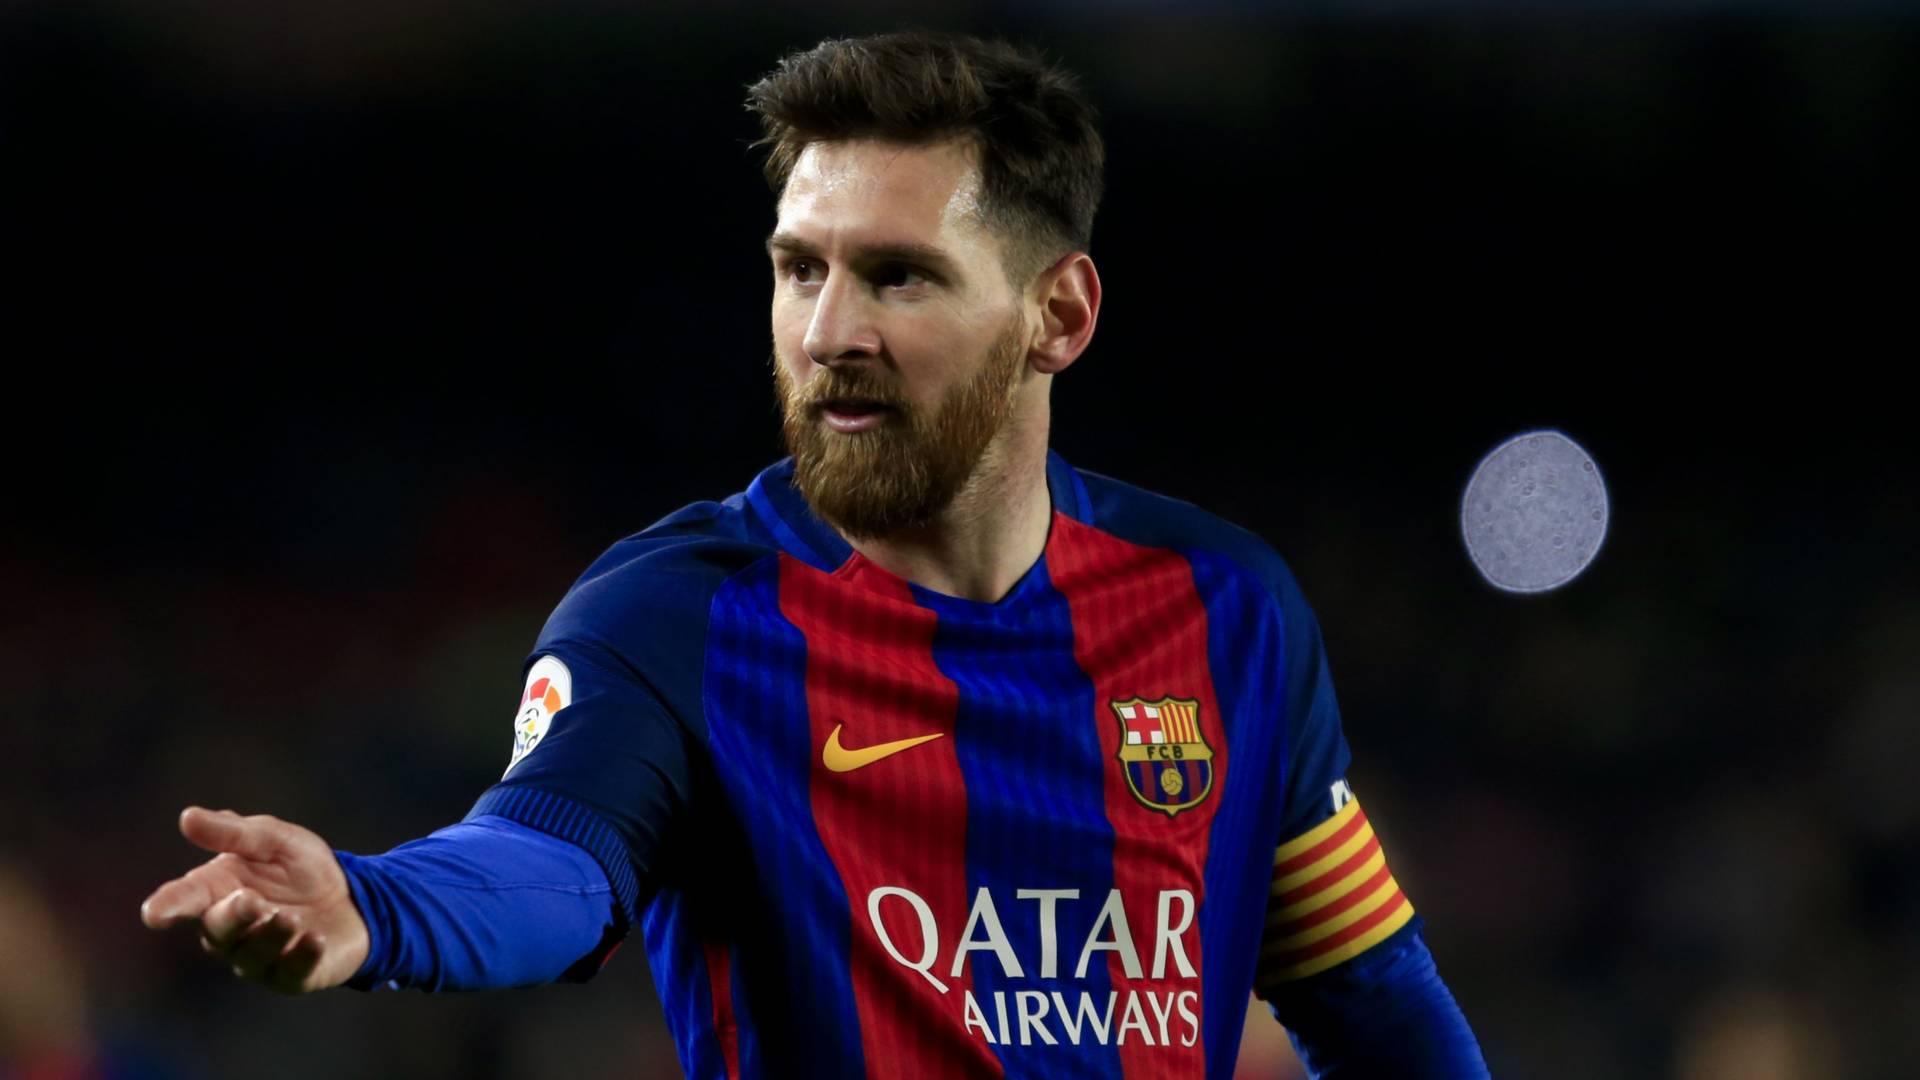 Lionel Messi volt a legtöbbet kereső sportoló az elmúlt egy évben a világon